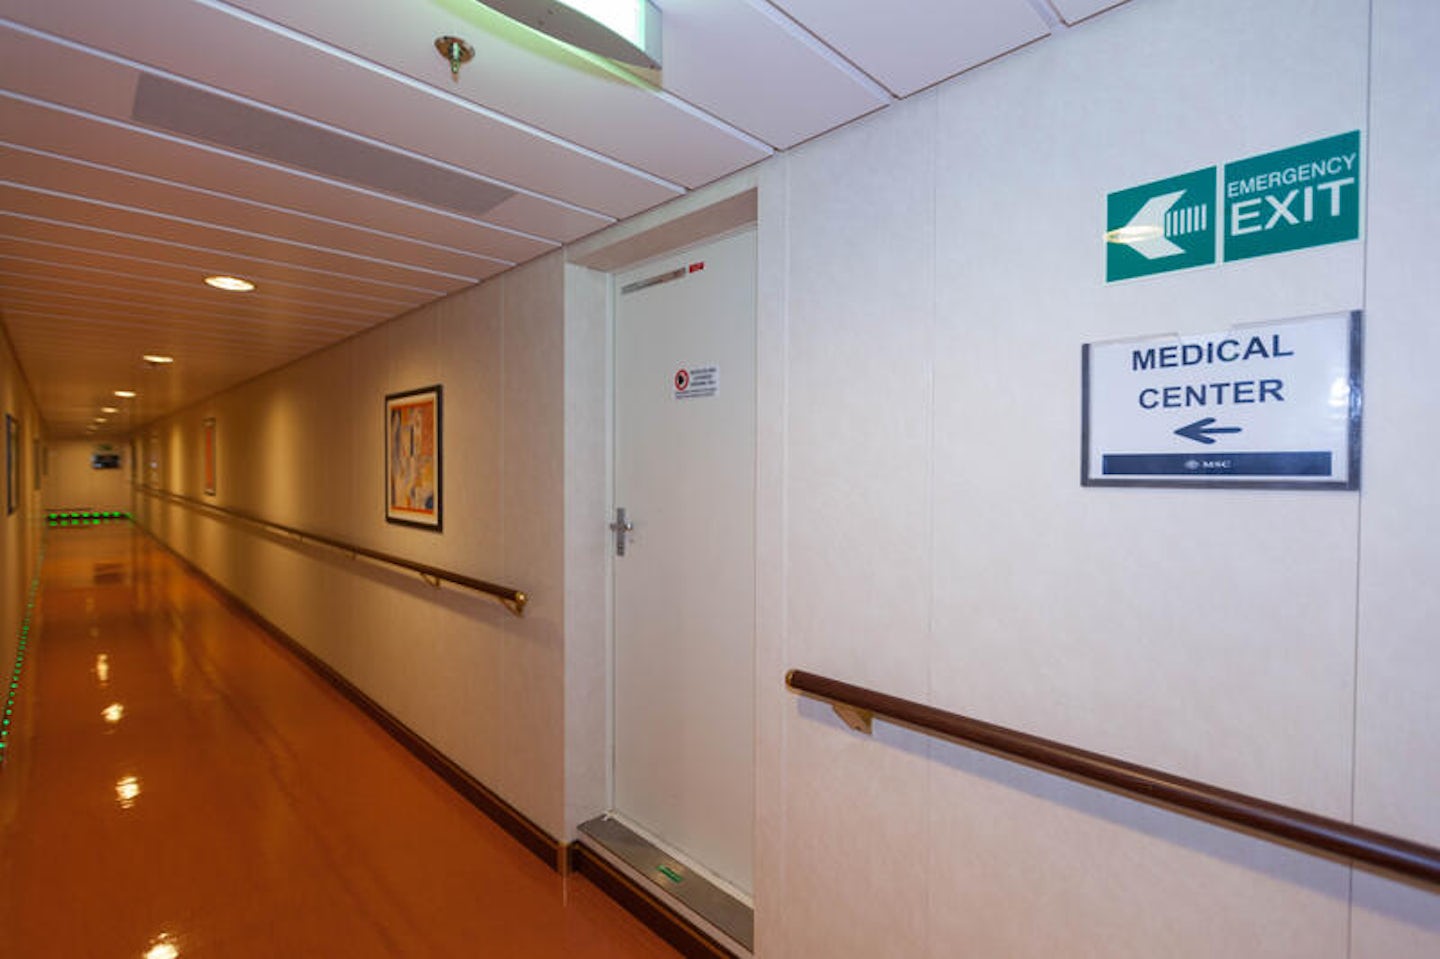 Medical Center on MSC Divina